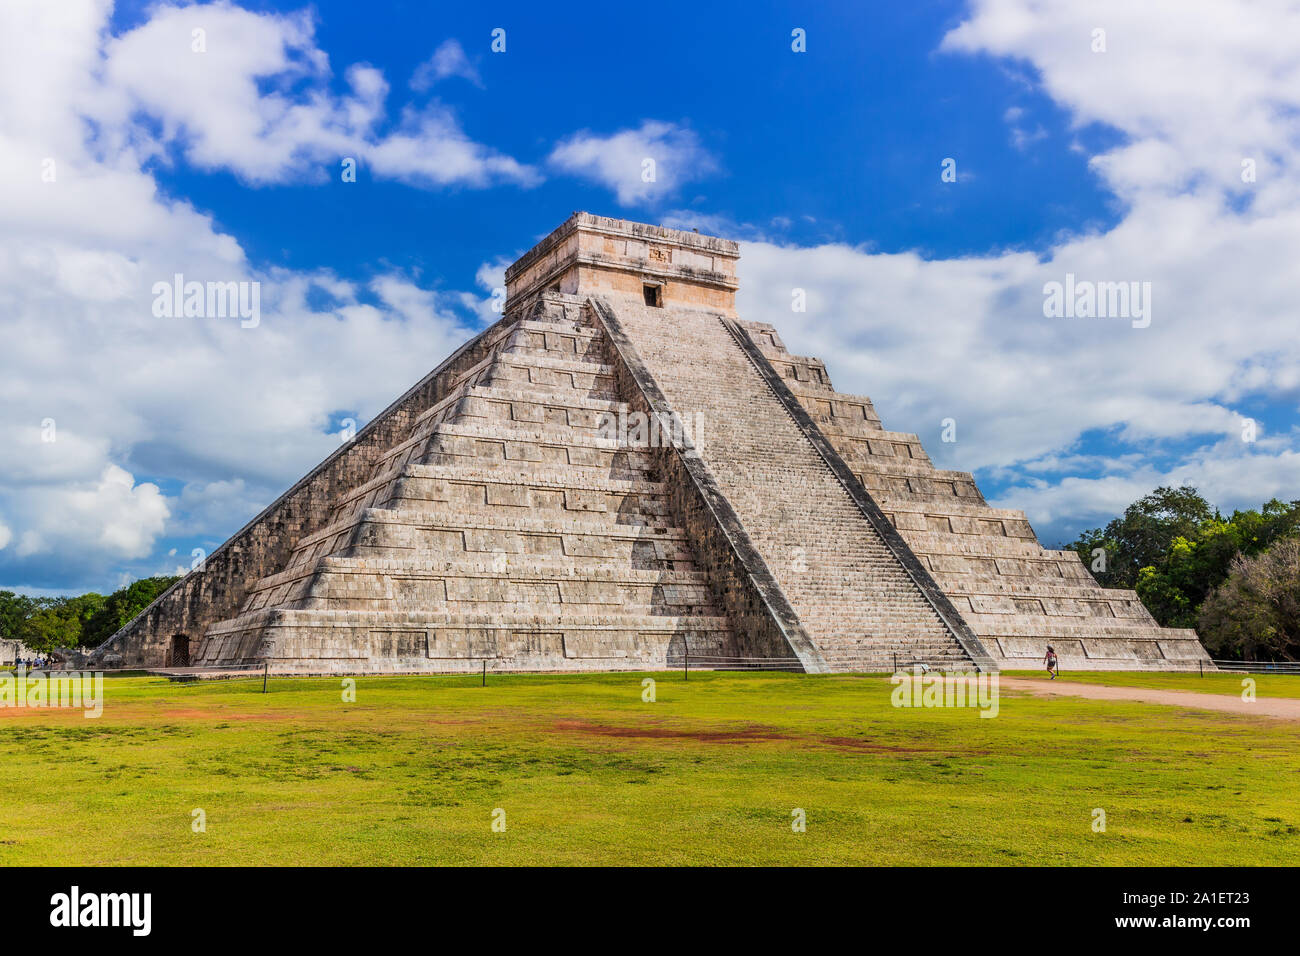 Chichen Itza, Mexiko. Tempel des Kukulcan, auch als "El Castillo bekannt. Stockfoto